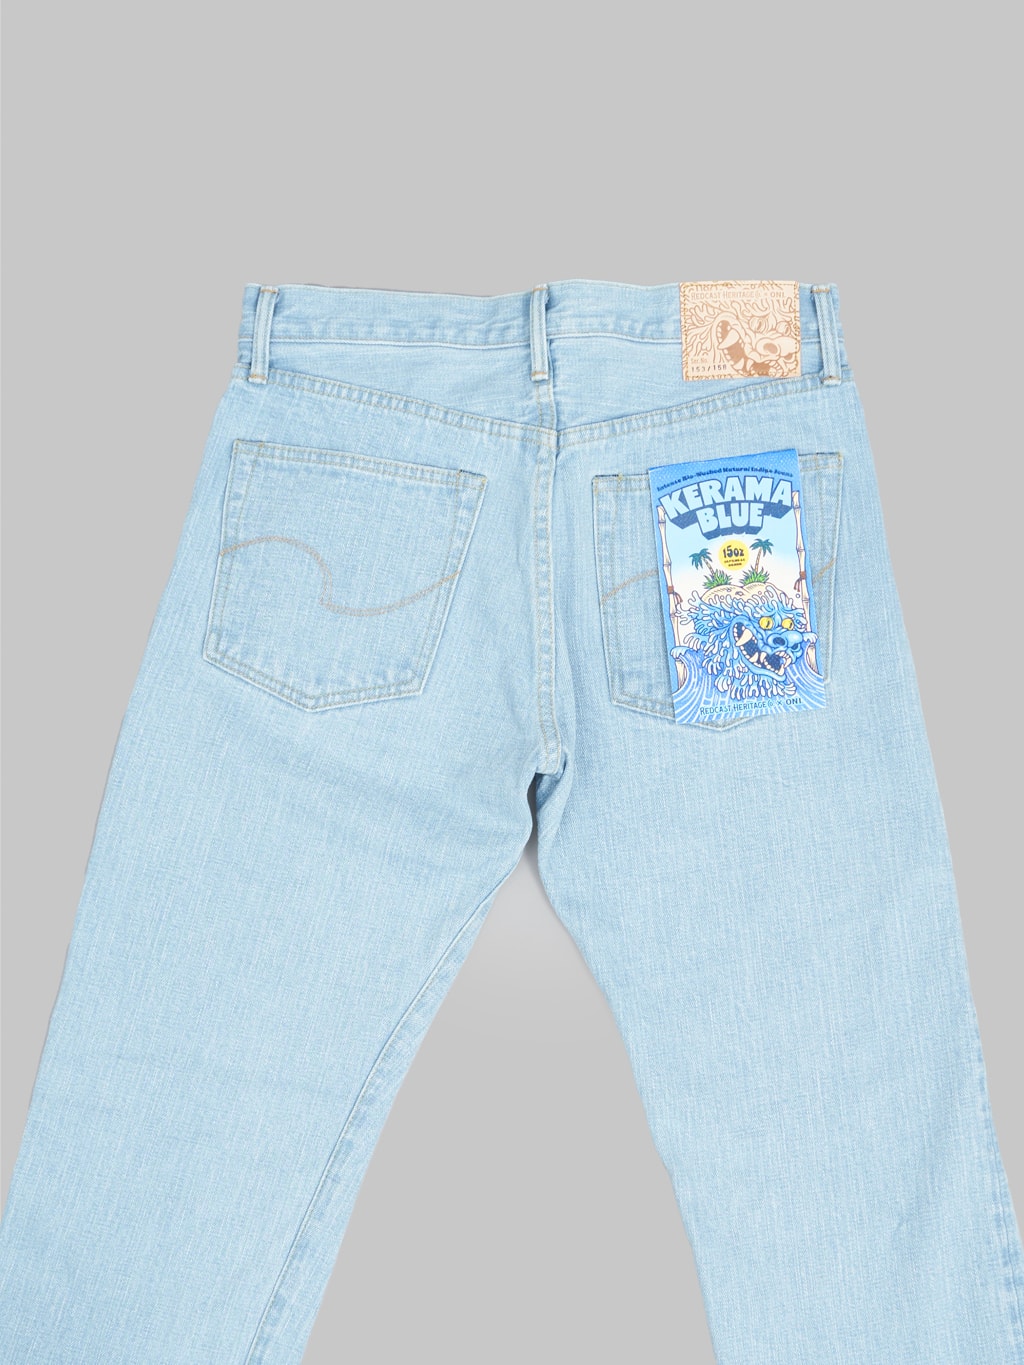 redcast heritage x oni denim kerama blue 15oz selvedge jeans back pcokets